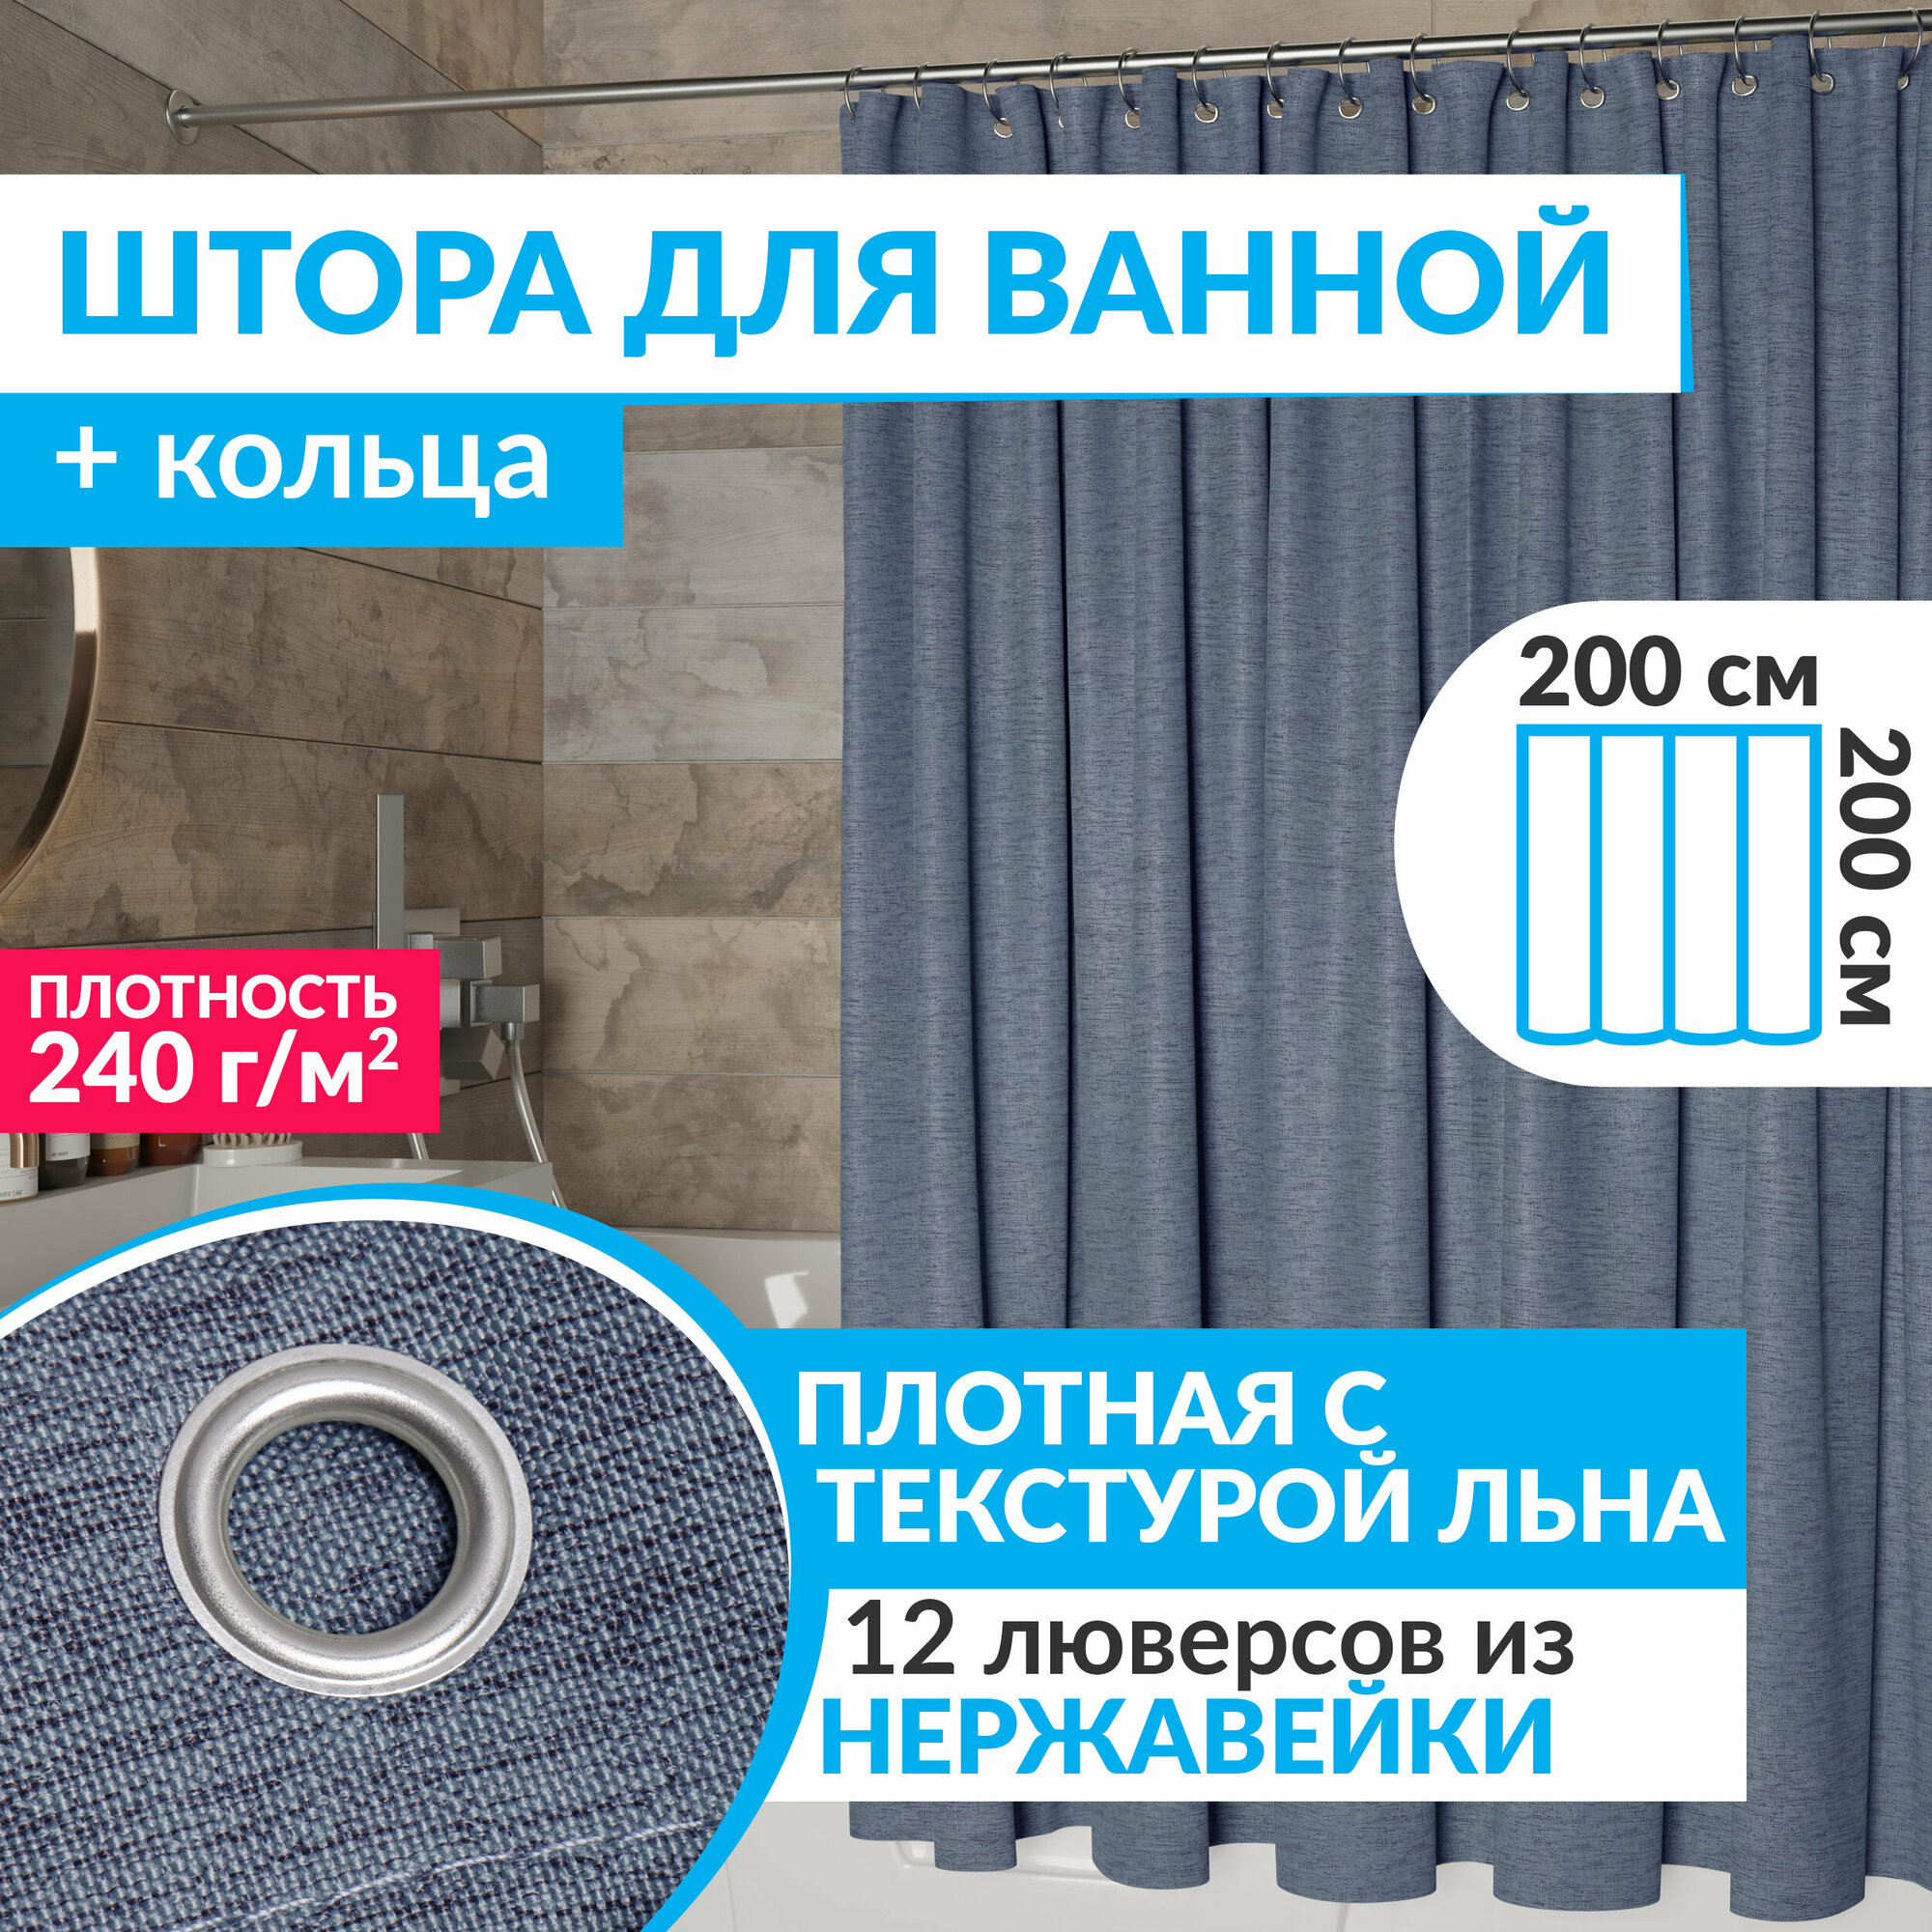 Штора для ванной тканевая плотная LEN 200х200 см полиэстер / текстура лён / синяя занавеска для душа